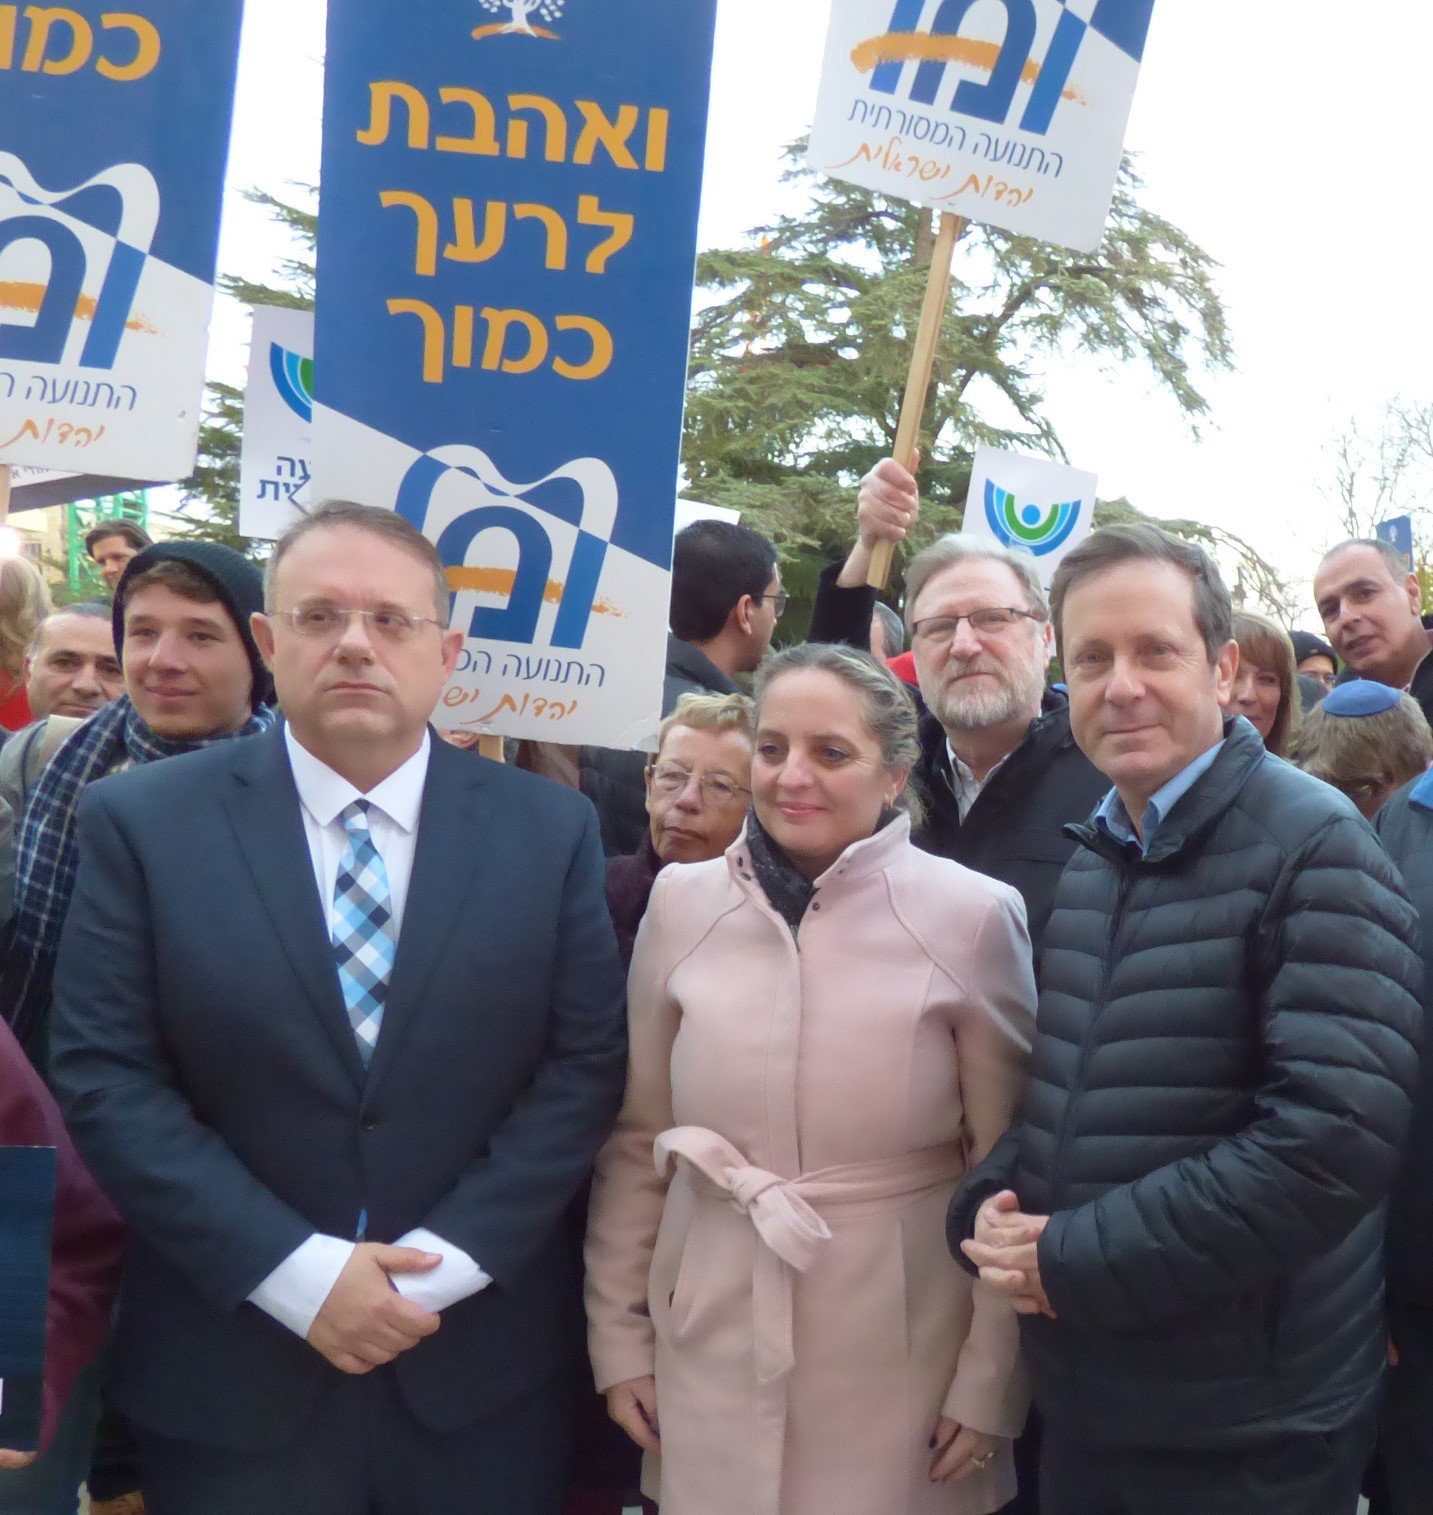 Митинг против антисемитизма. Справа налево – Ицхак Герцог, Кэрол Нуриэль, Яаков Хагоэль. Фото: пресс-служба Сохнута